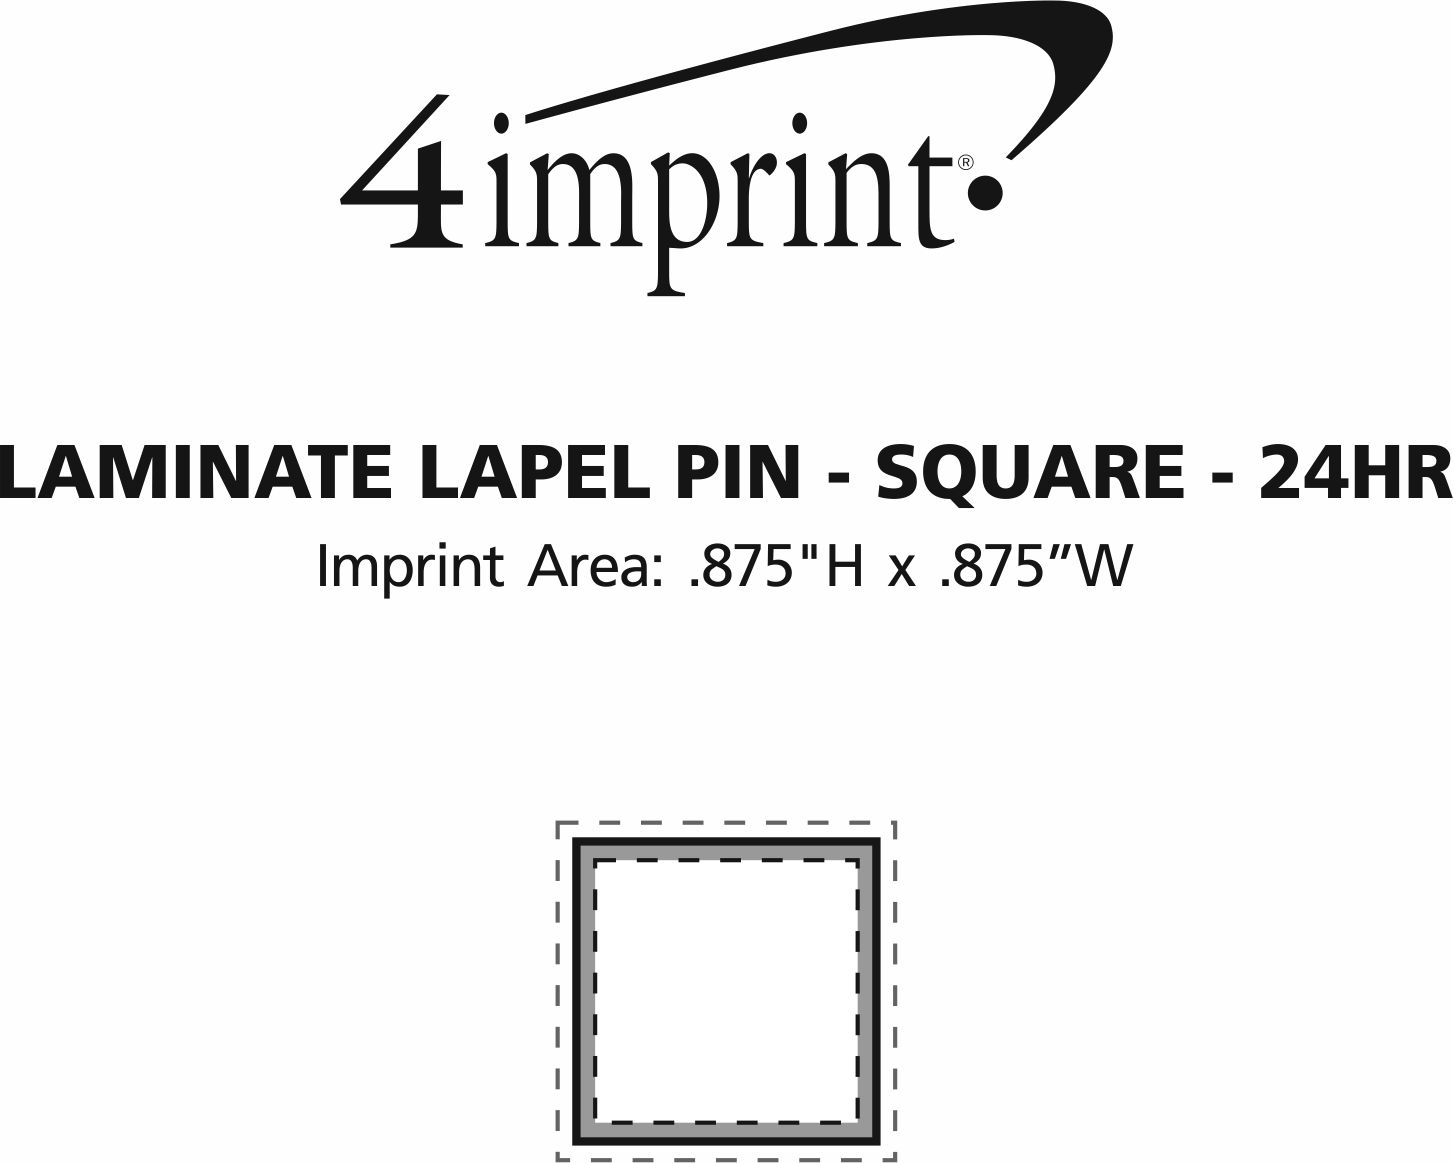 Imprint Area of Laminate Lapel Pin - Square - 24 hr